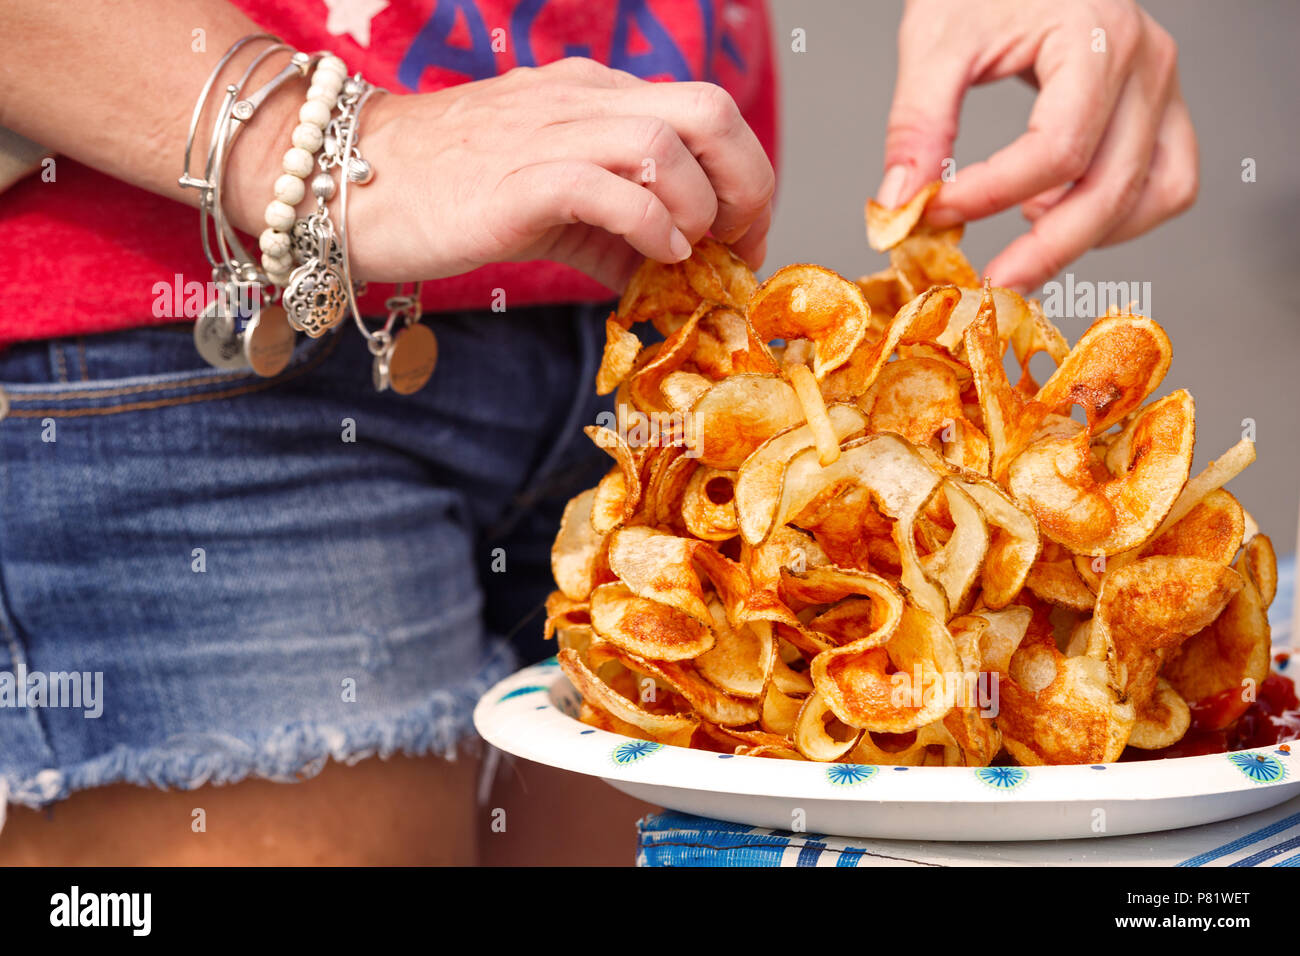 Frau mit Spirale - geschnittenen Chips auf einem US-Unabhängigkeitstag Feier der Gemeinschaft Stockfoto